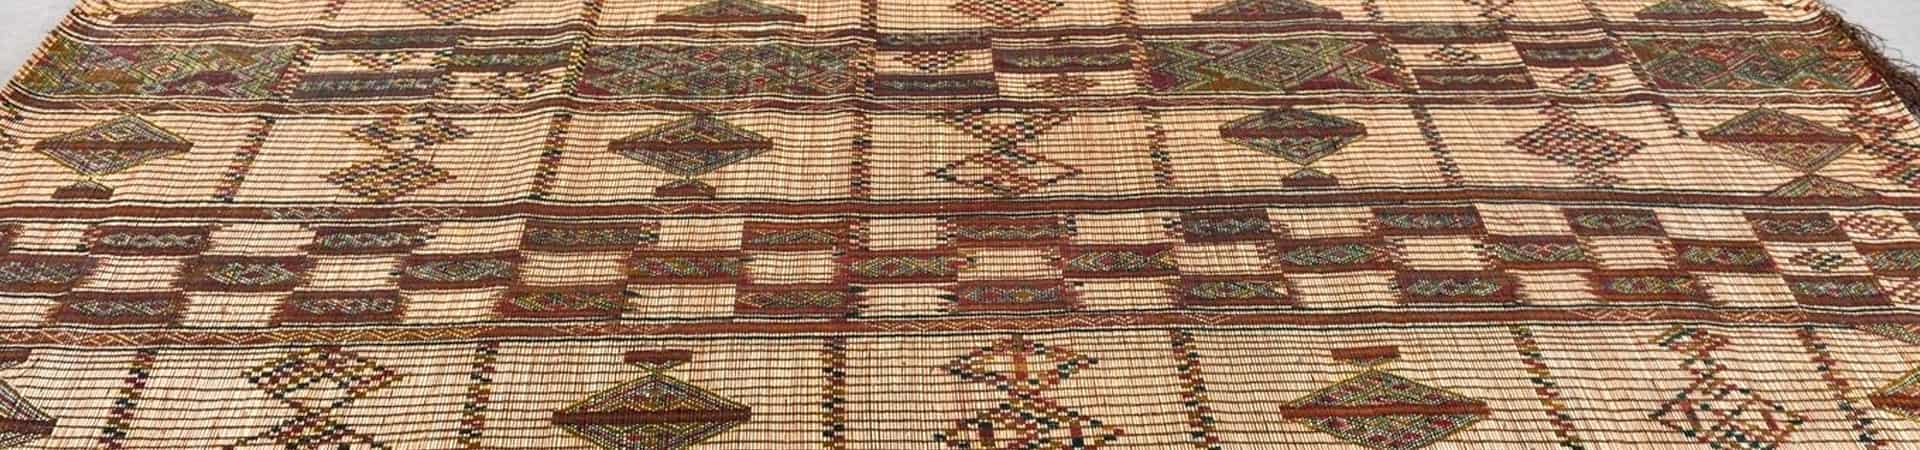 Mauritanian mats